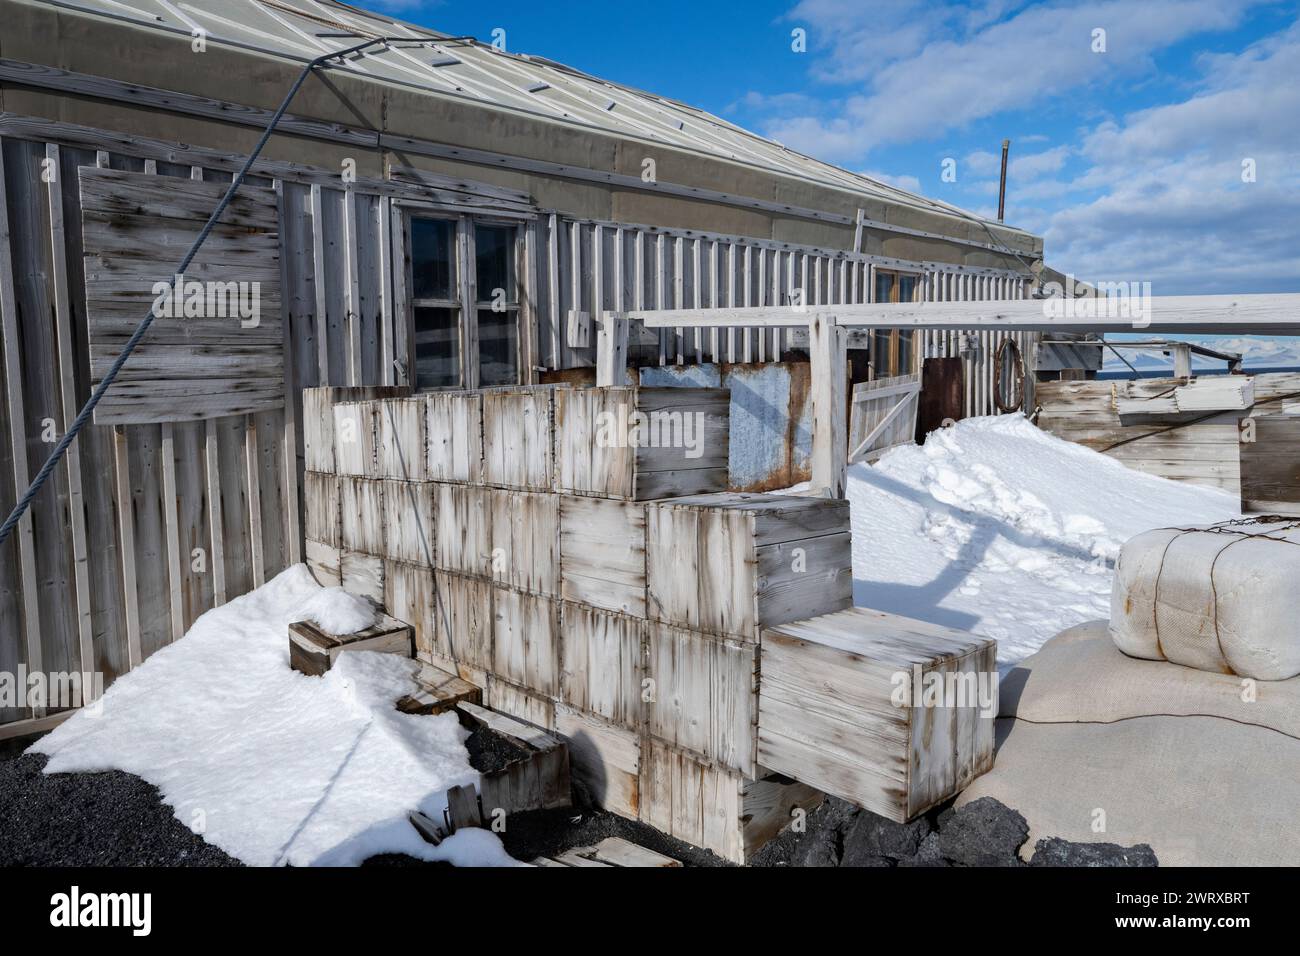 Antarctique, mer de Ross, île de Ross, Cap Royds. Shackleton's Hut, utilisée lors de l'expédition britannique Antarctique Nimrod (1907-1907) Banque D'Images